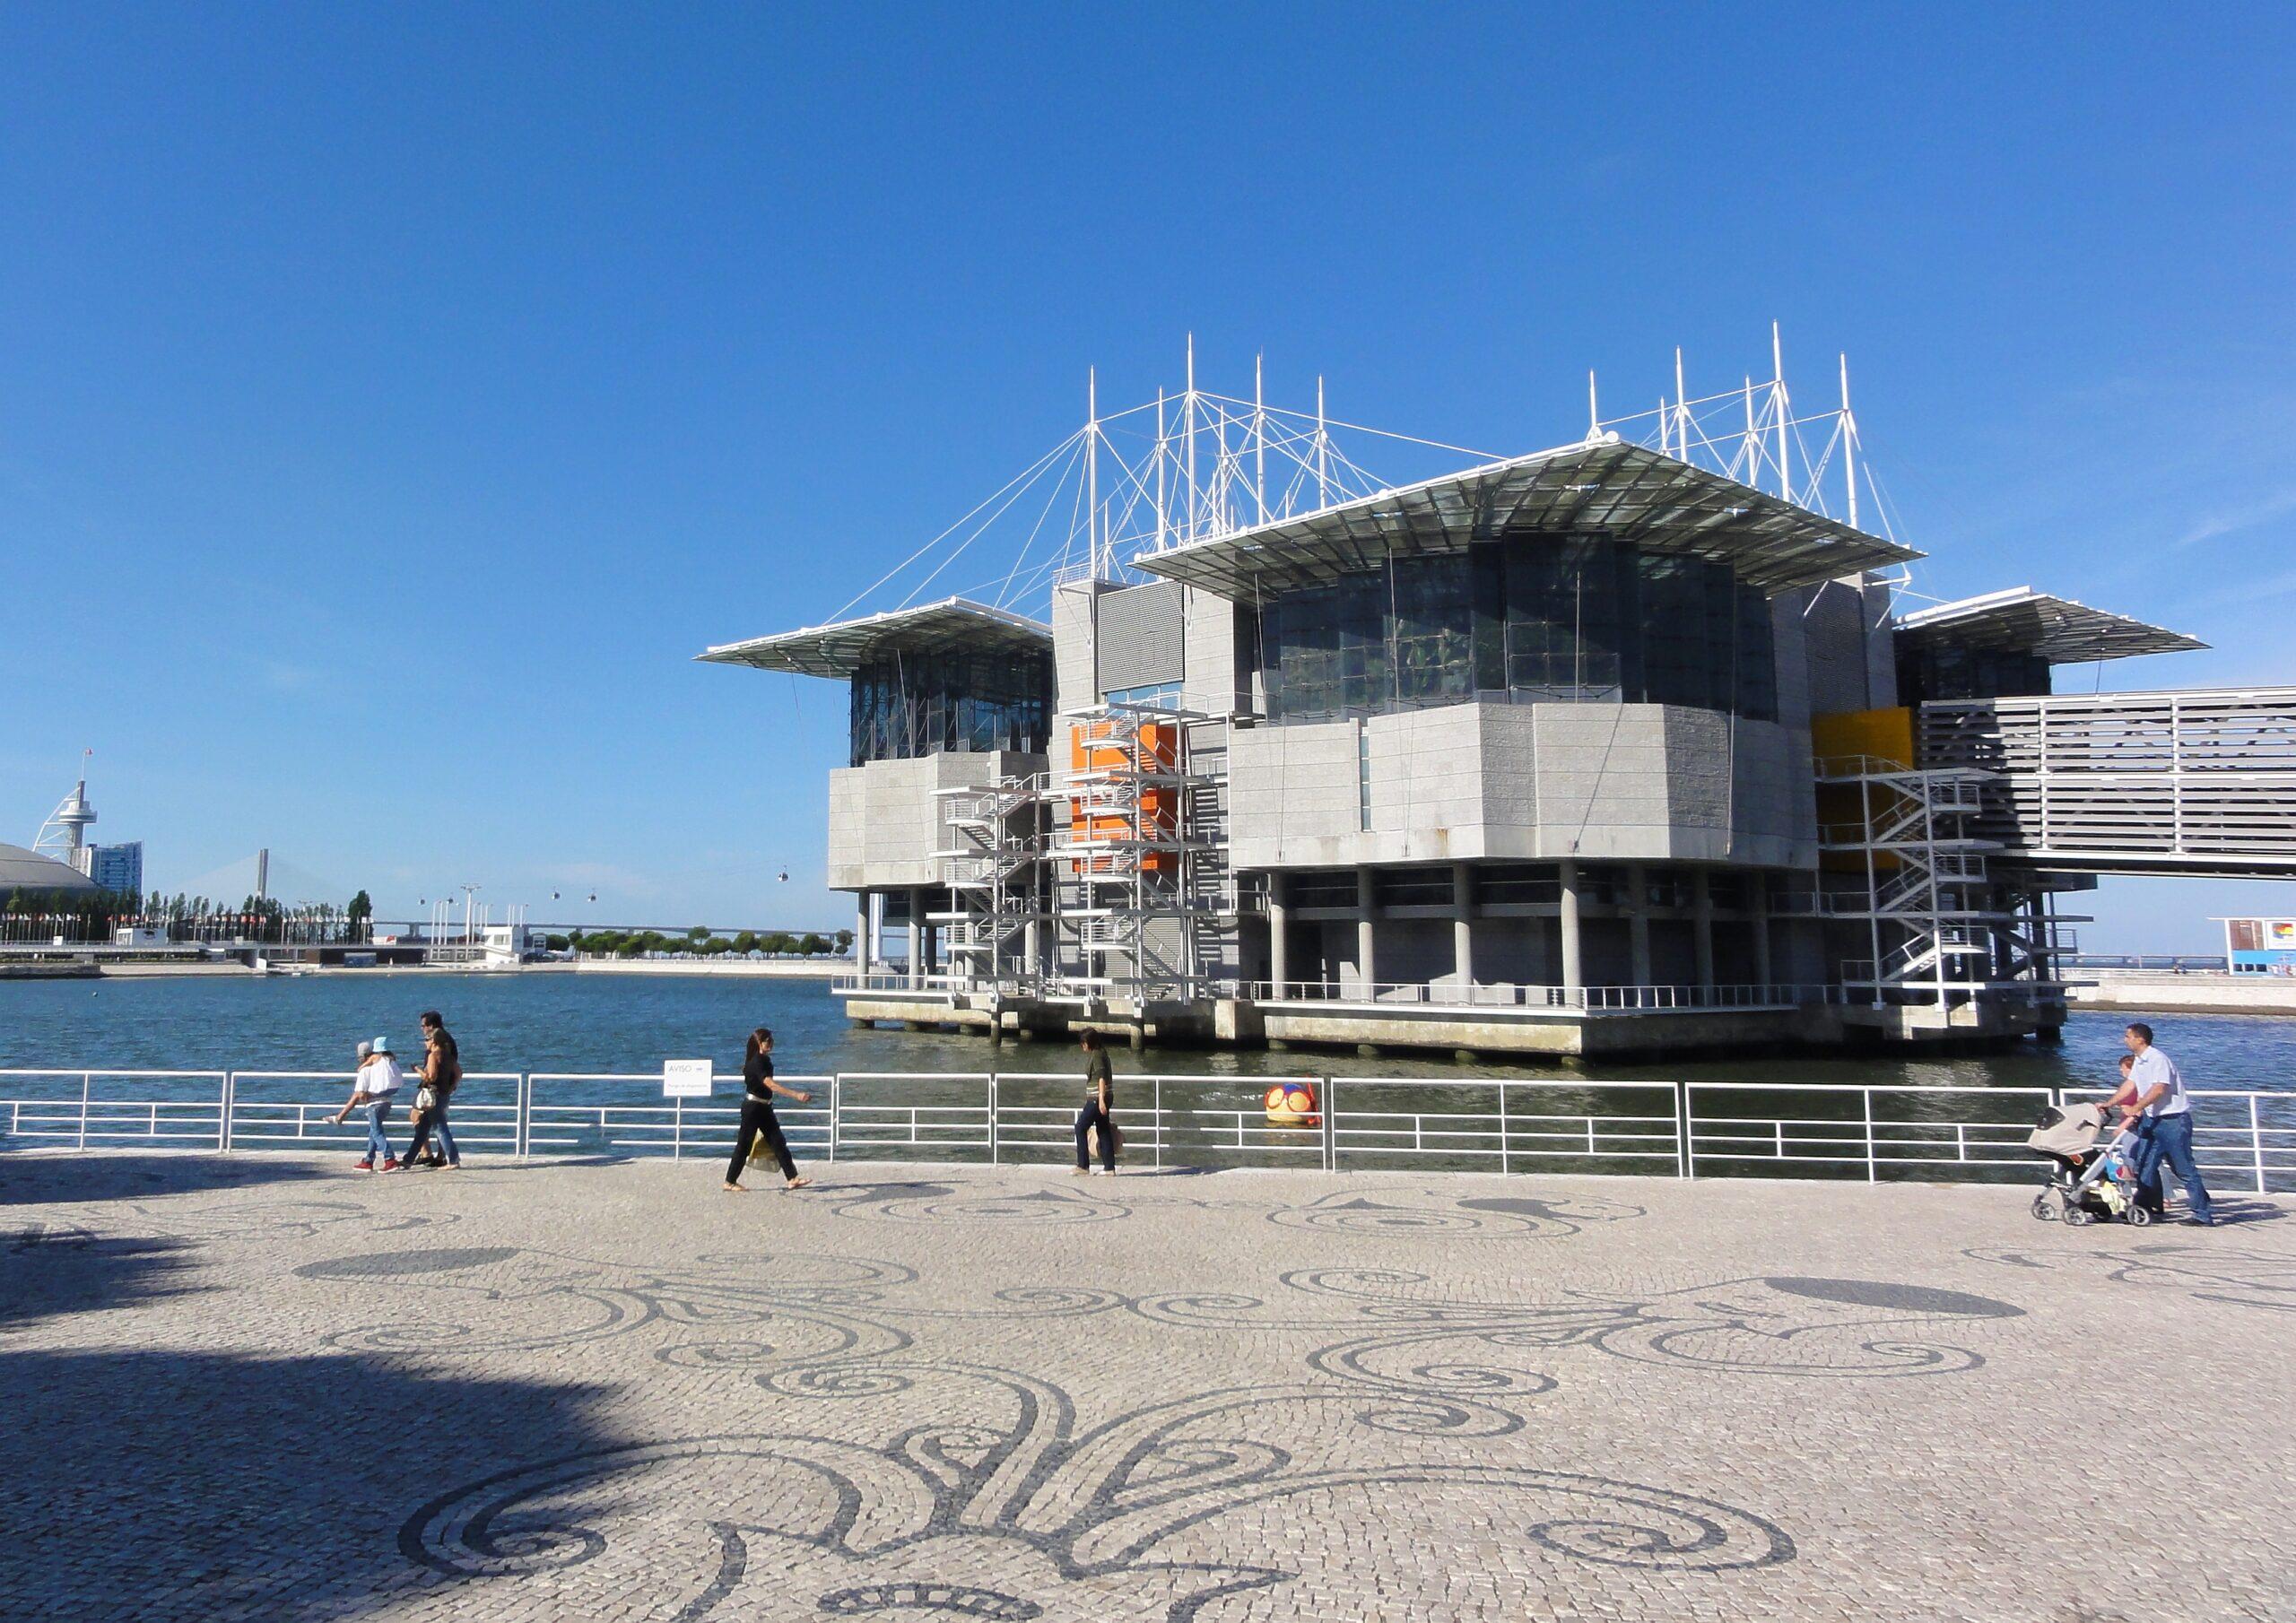 Oceanario de Lisboa: Places to Visit in Lisbon